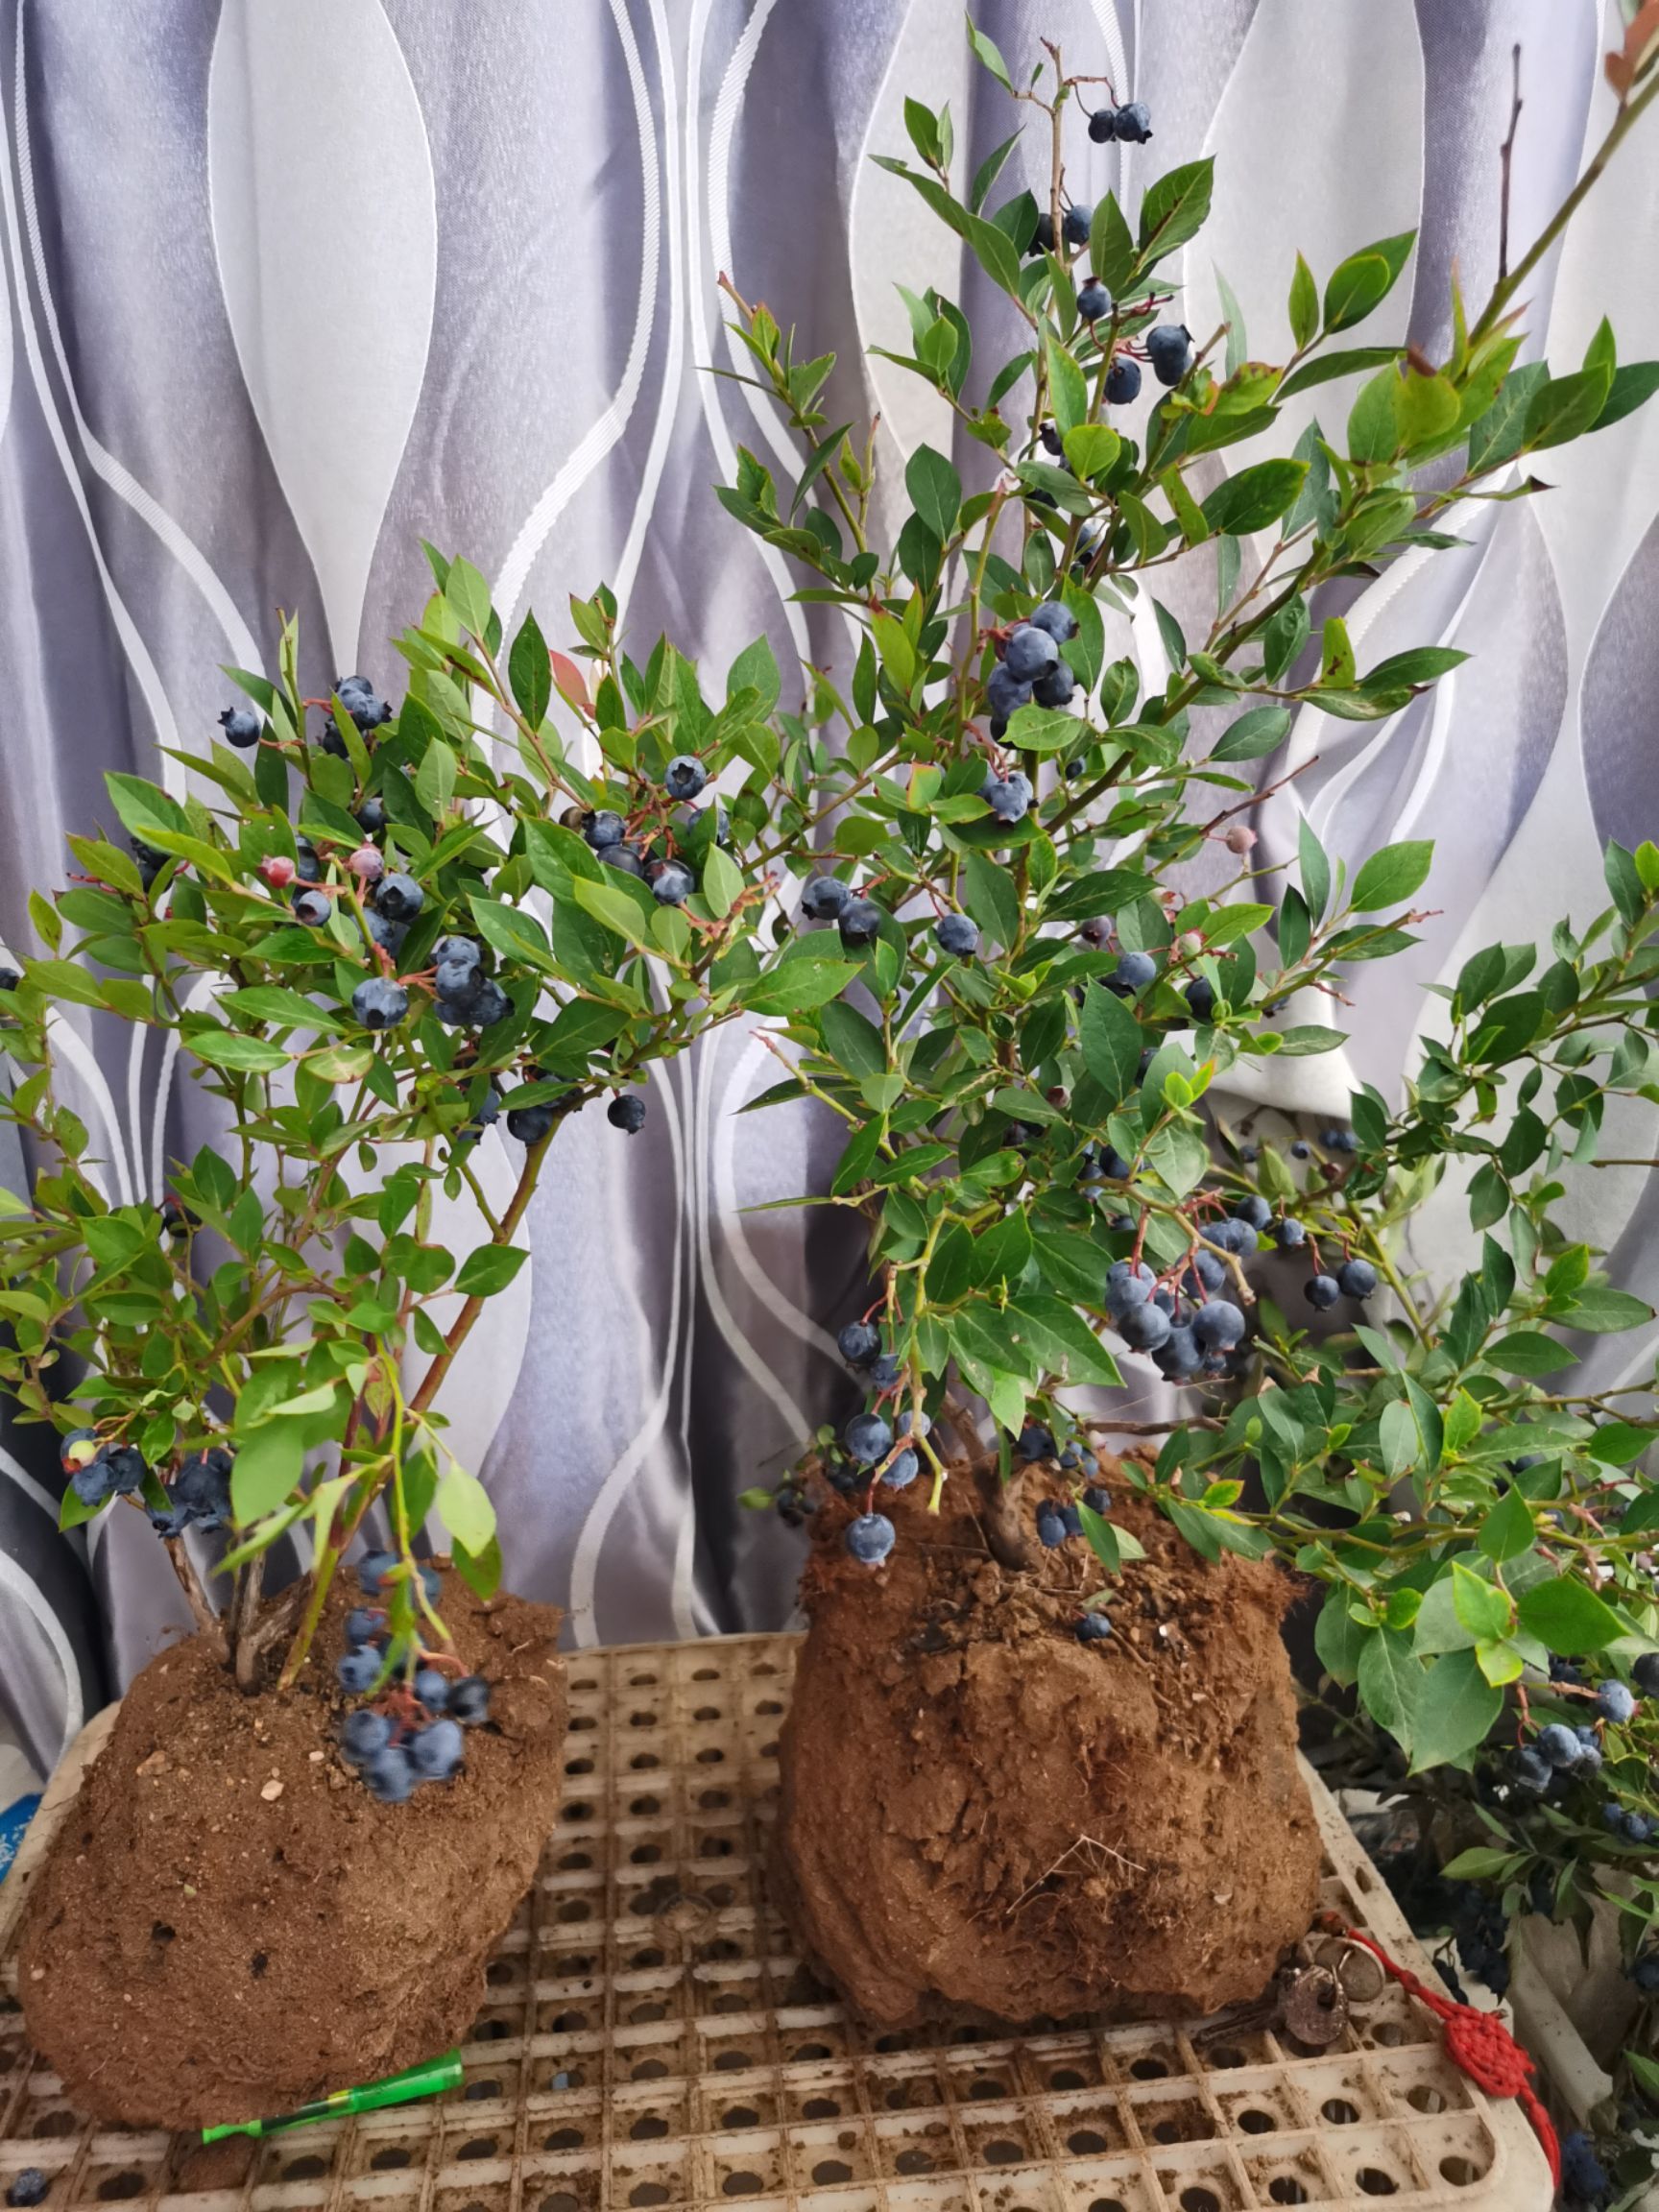 商品属性 品种名:蓝宝石蓝莓苗 品种名:蓝宝石蓝莓苗 分类:成品树